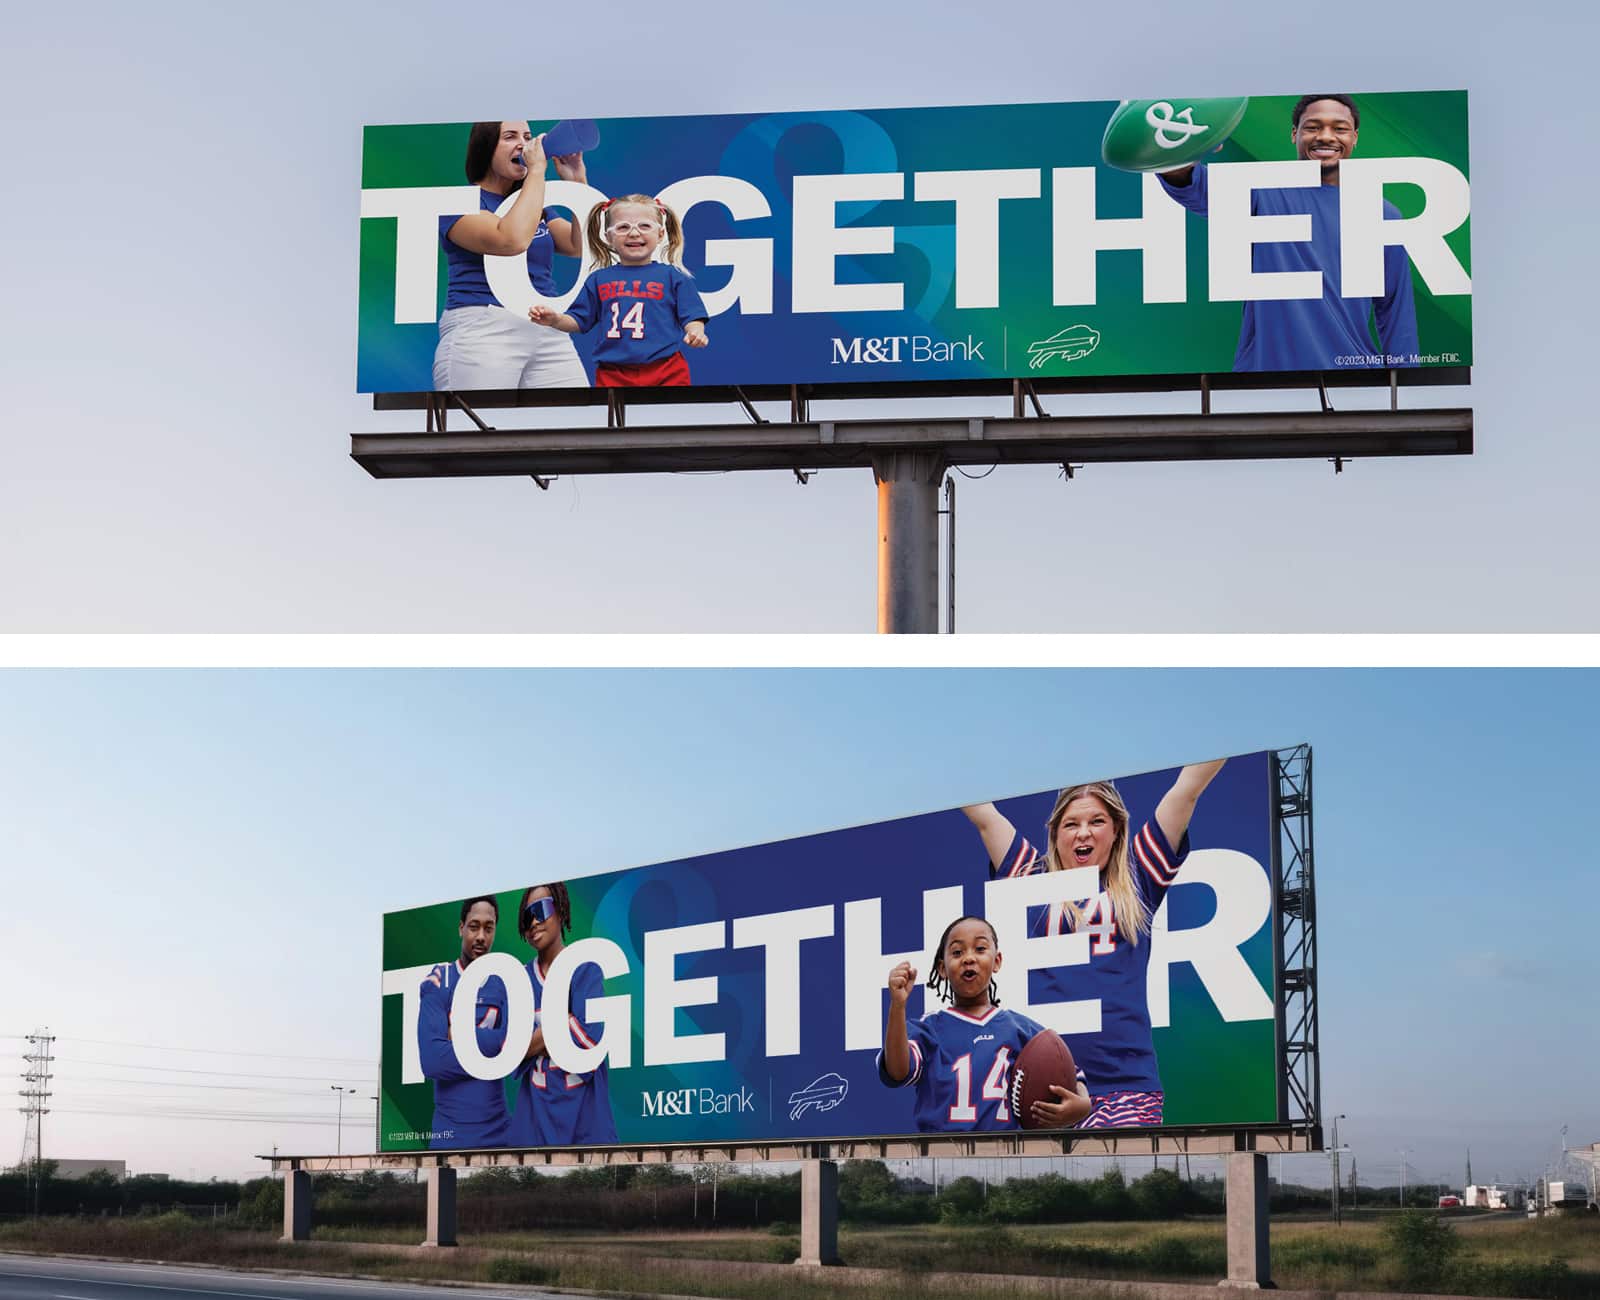 Together billboard ads for M&T bank